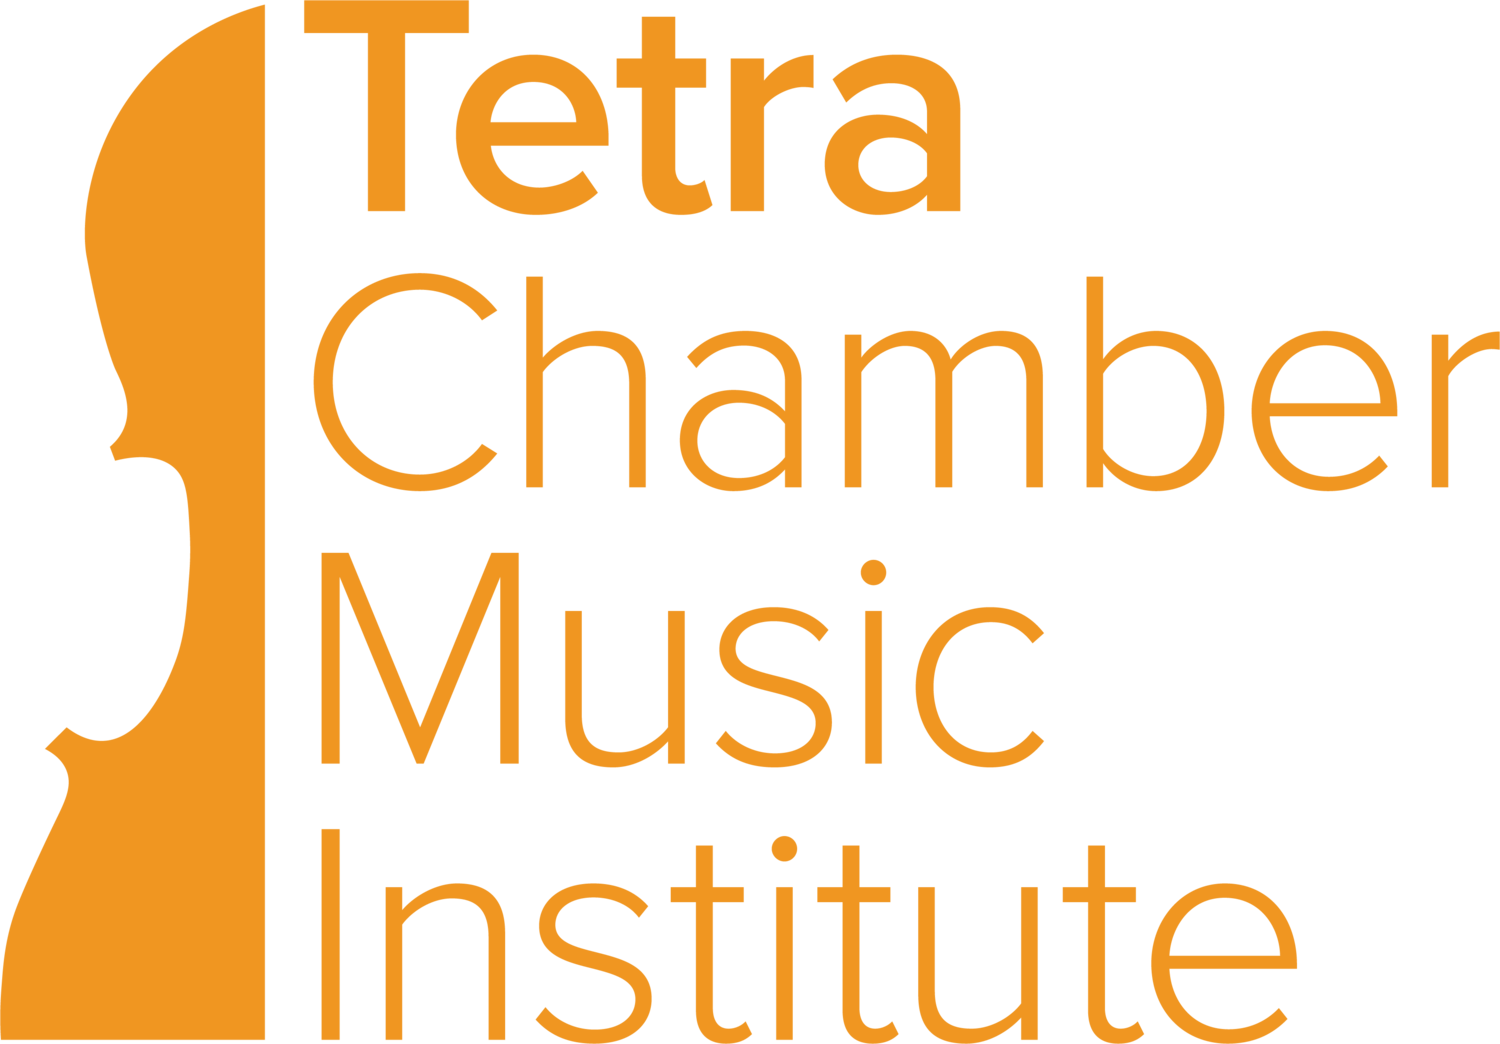 Tetra Chamber Music Institute